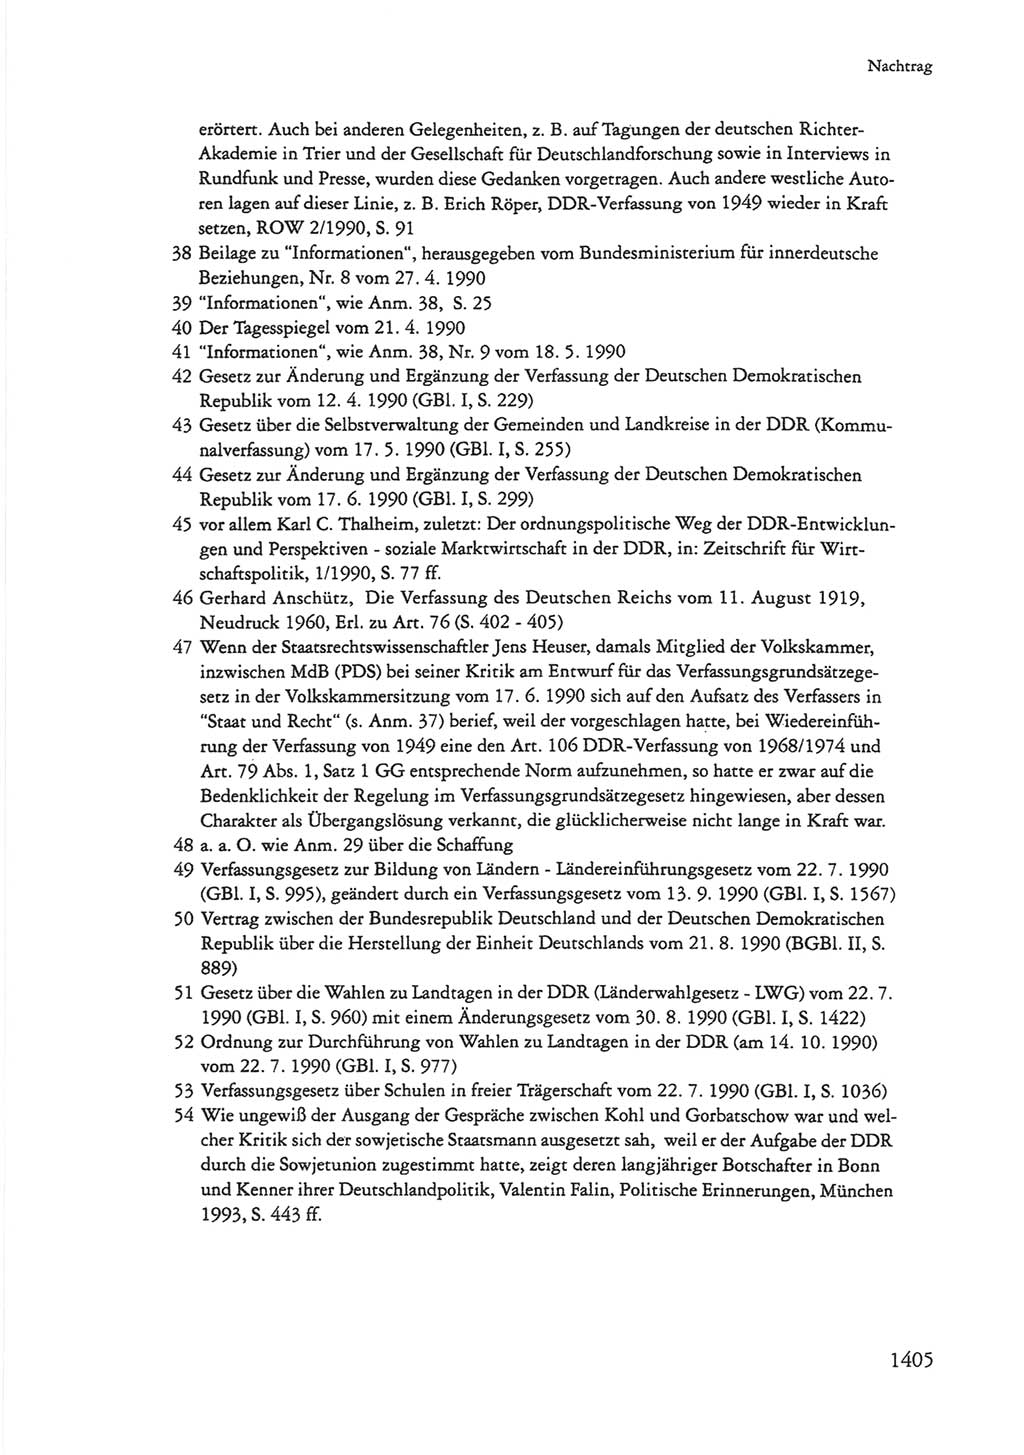 Die sozialistische Verfassung der Deutschen Demokratischen Republik (DDR), Kommentar mit einem Nachtrag 1997, Seite 1405 (Soz. Verf. DDR Komm. Nachtr. 1997, S. 1405)